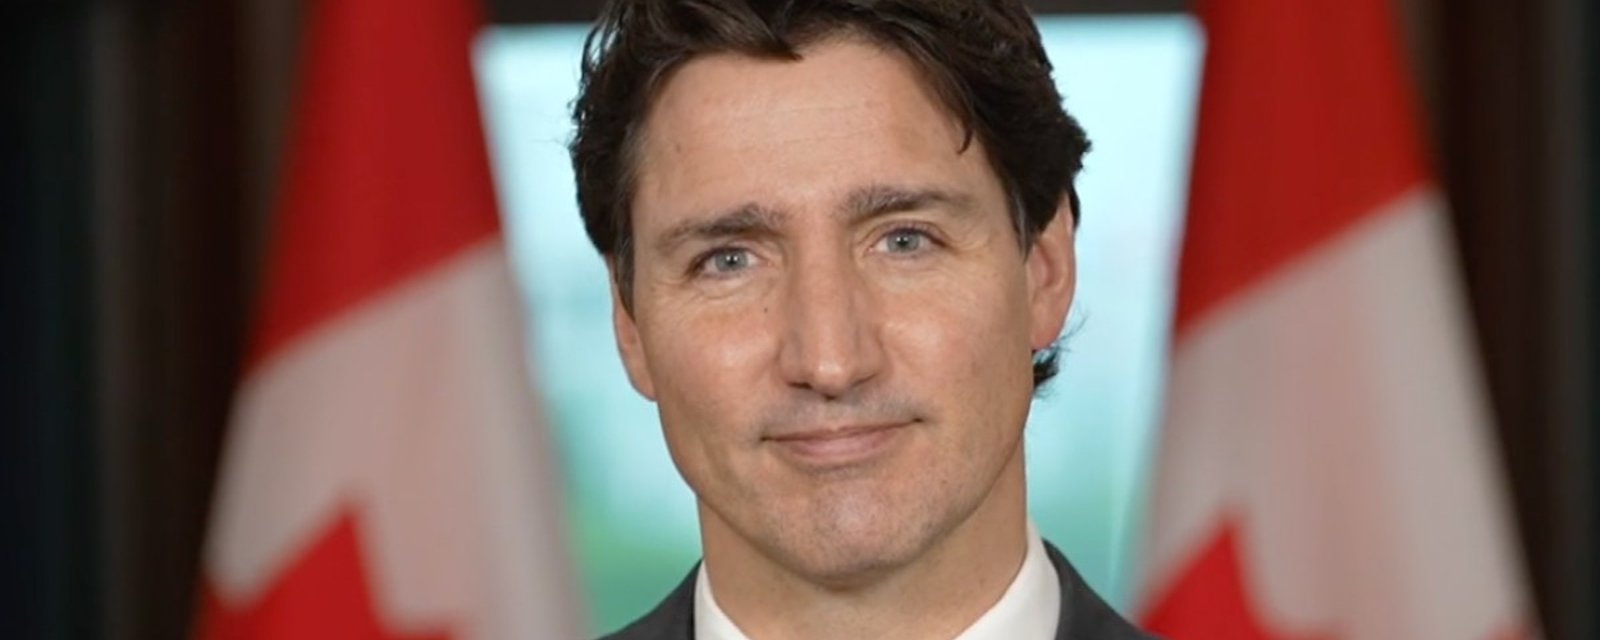 Justin Trudeau s'excuse pour la crise des passeports